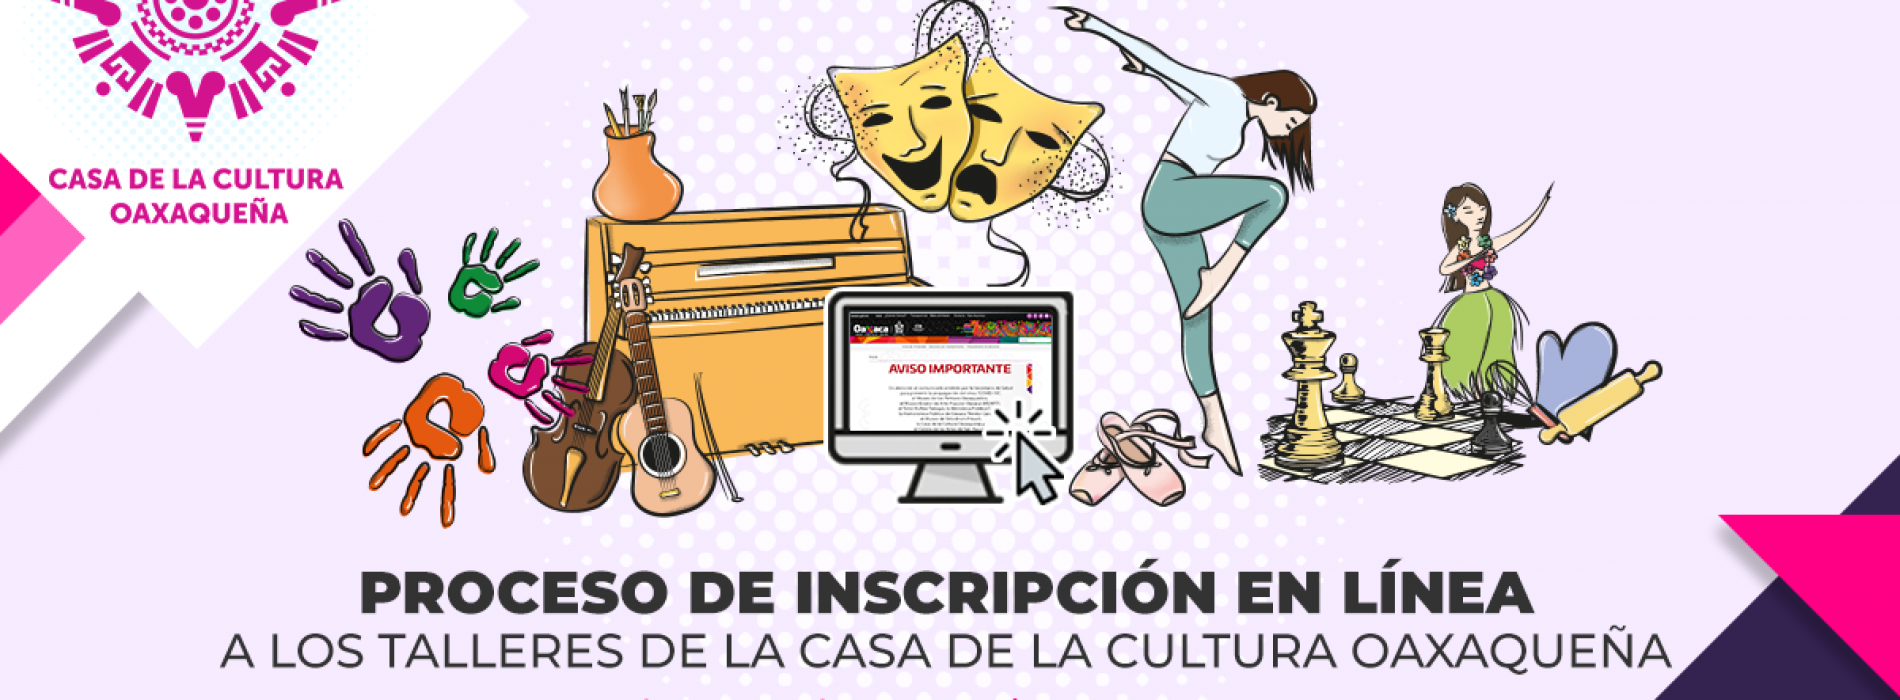 La Casa de la Cultura Oaxaqueña abre proceso  de inscripción a sus talleres en línea